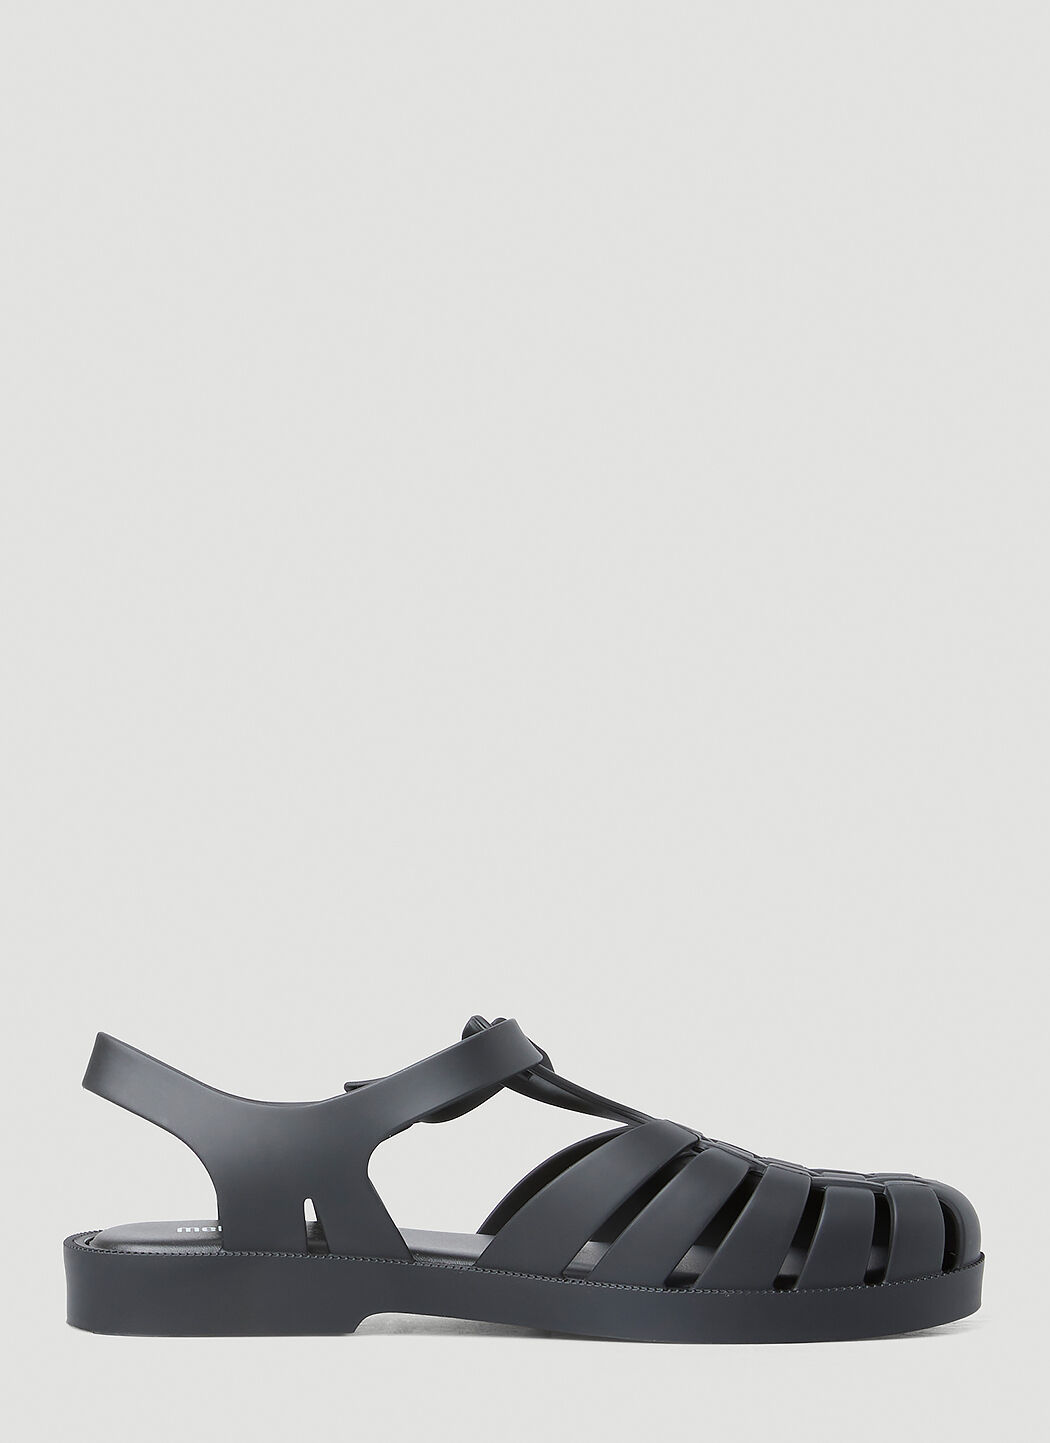 Melissa x Marc Jacobs Possession Sandals Black mxm0254006